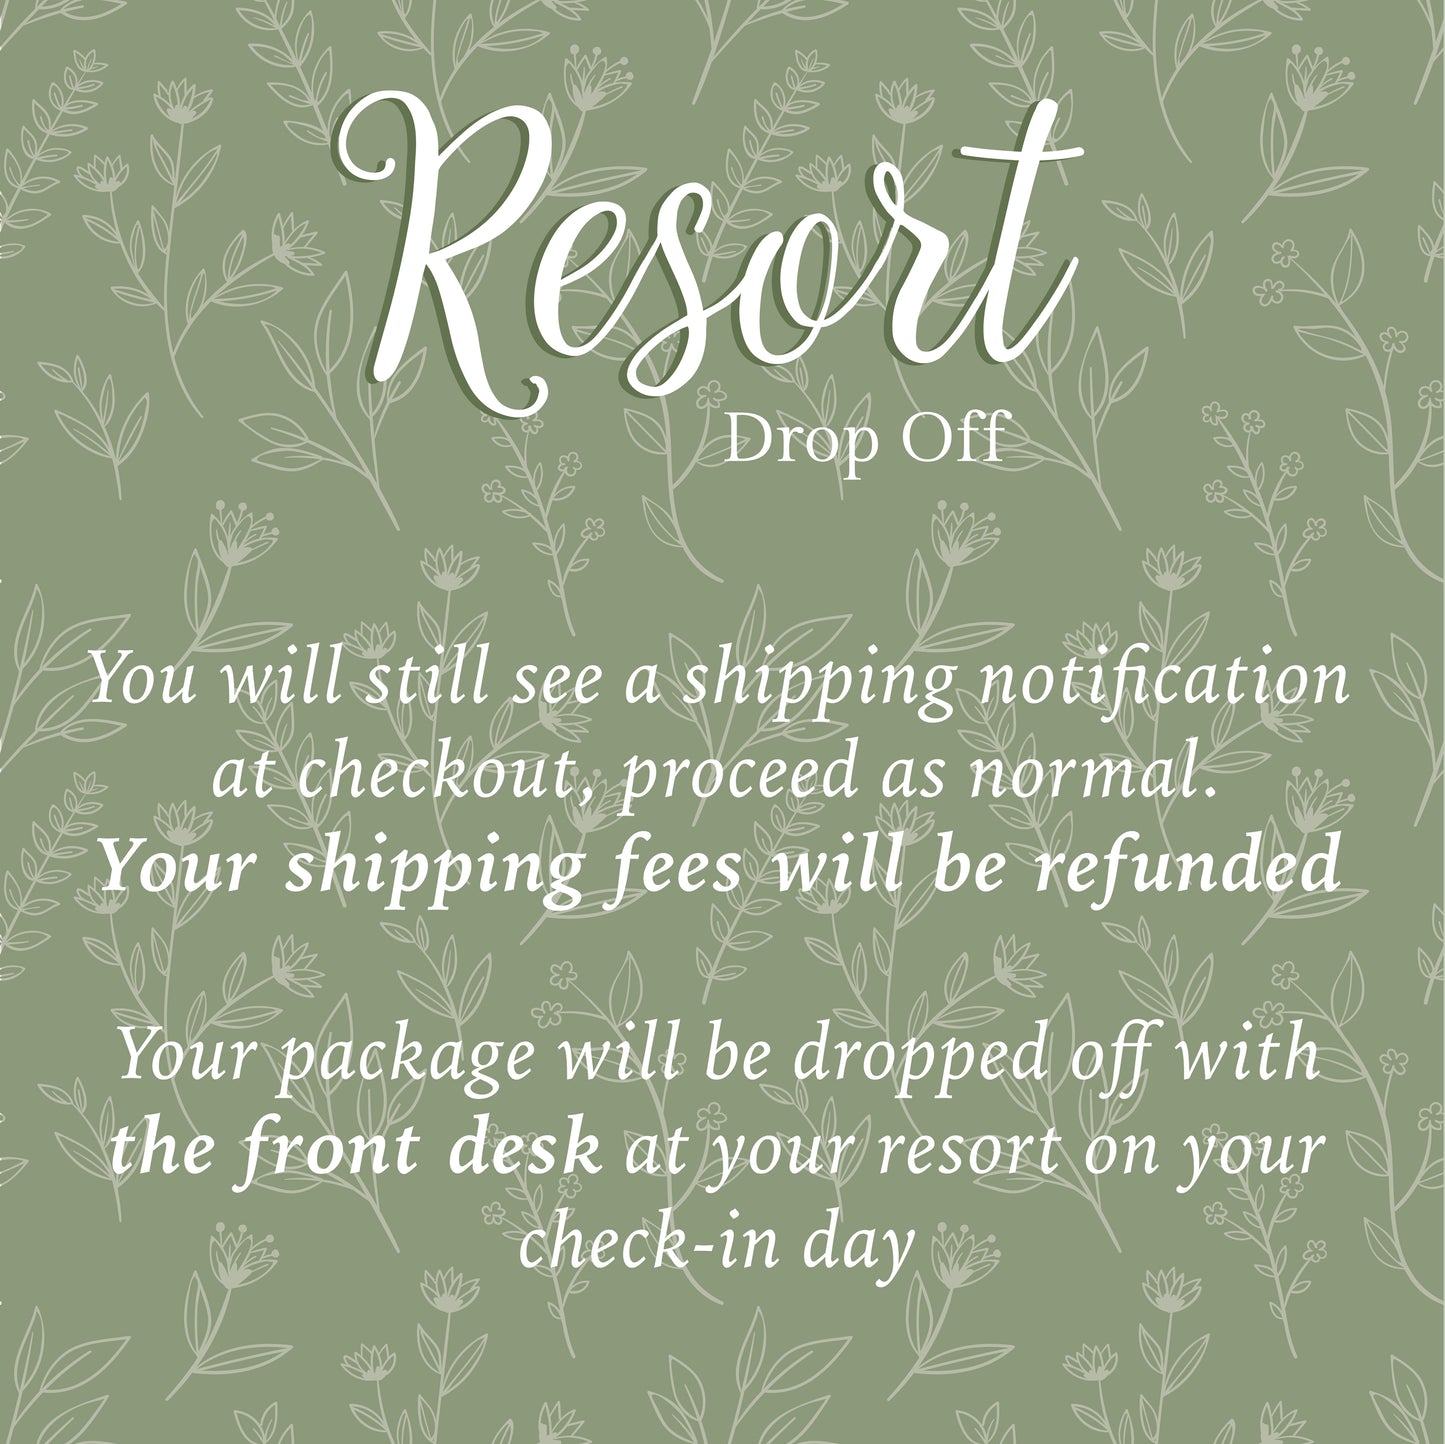 Resort Drop-Off